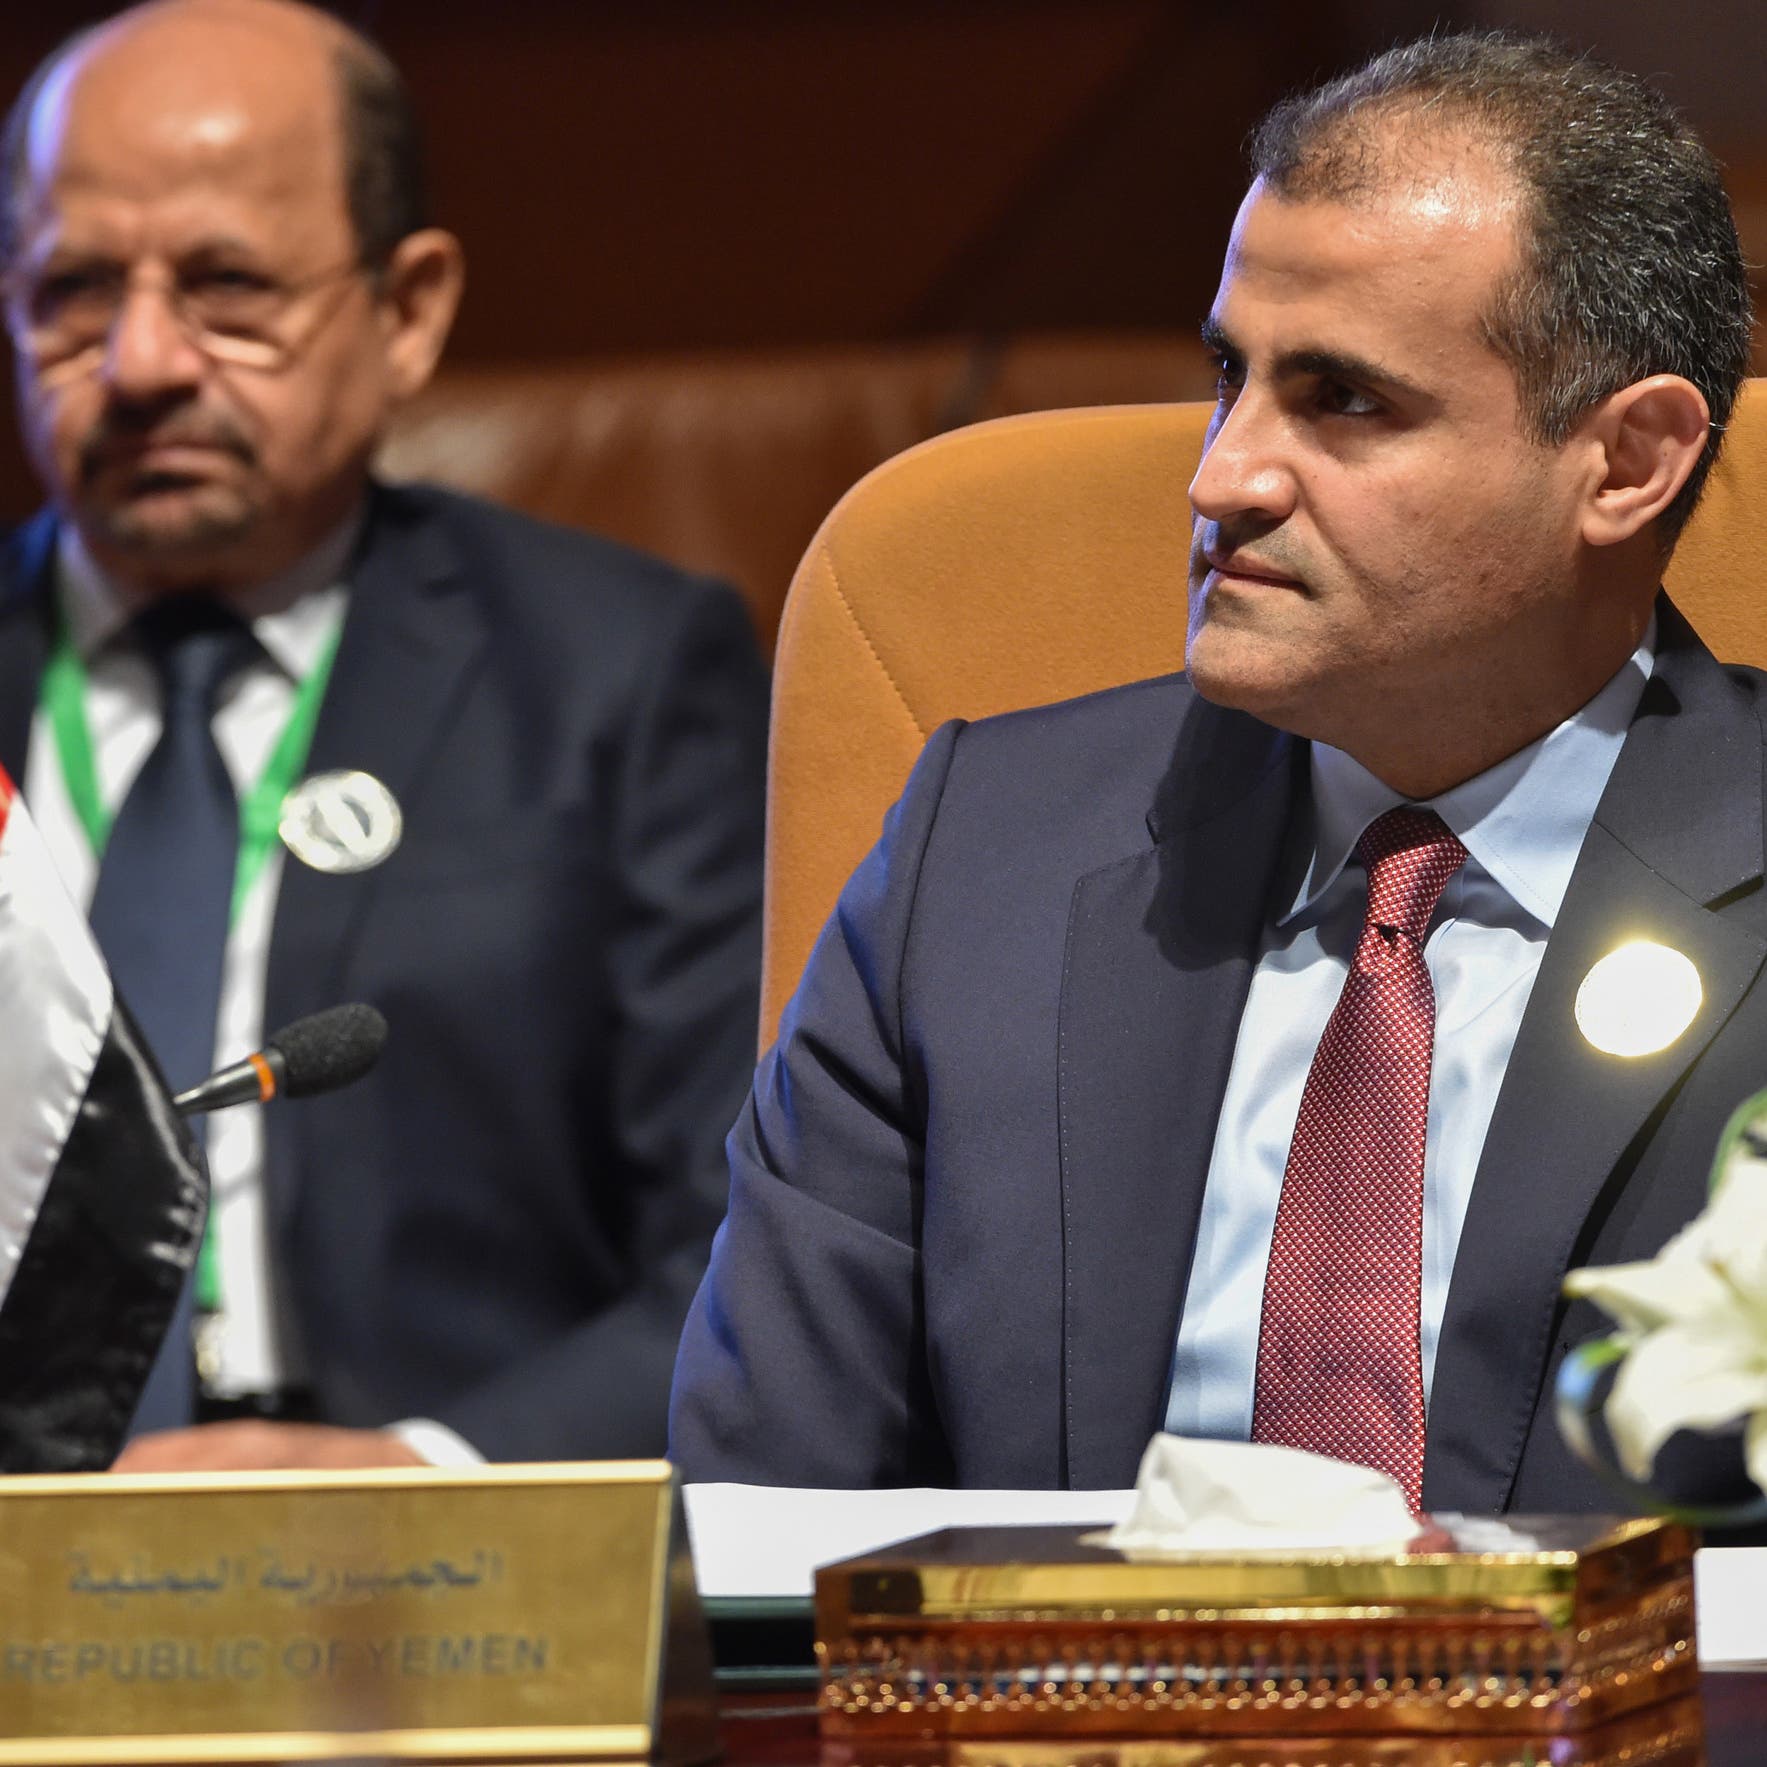 اليمن يبلغ مجلس الأمن رفضه تعديلات المبعوث الأممي الجديدة